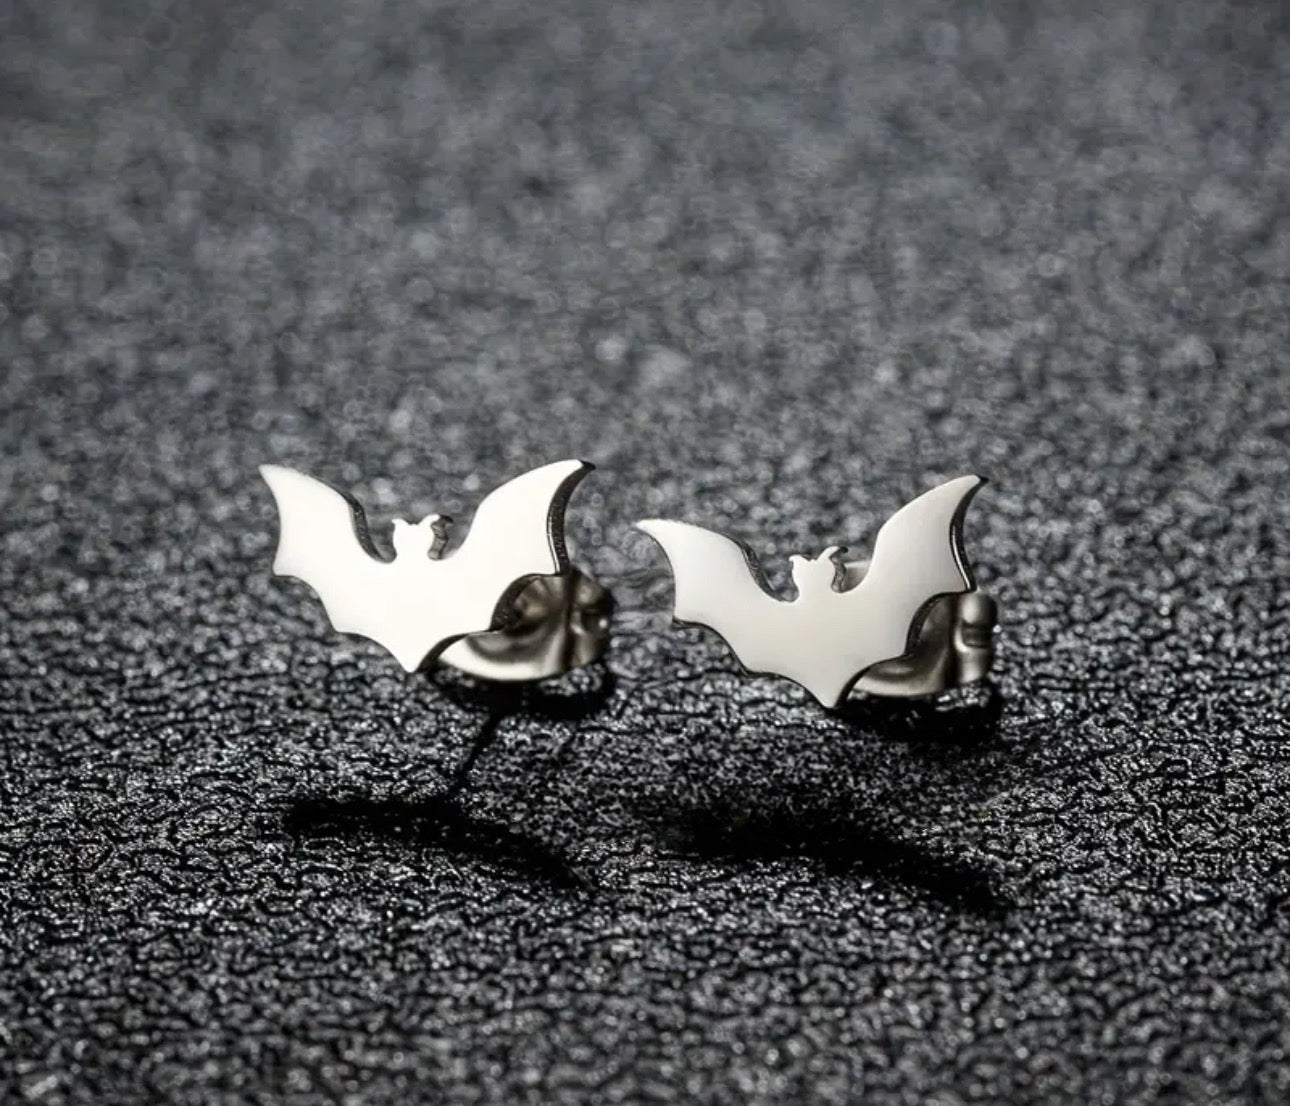 Stainless Steel Bat Stud Earrings